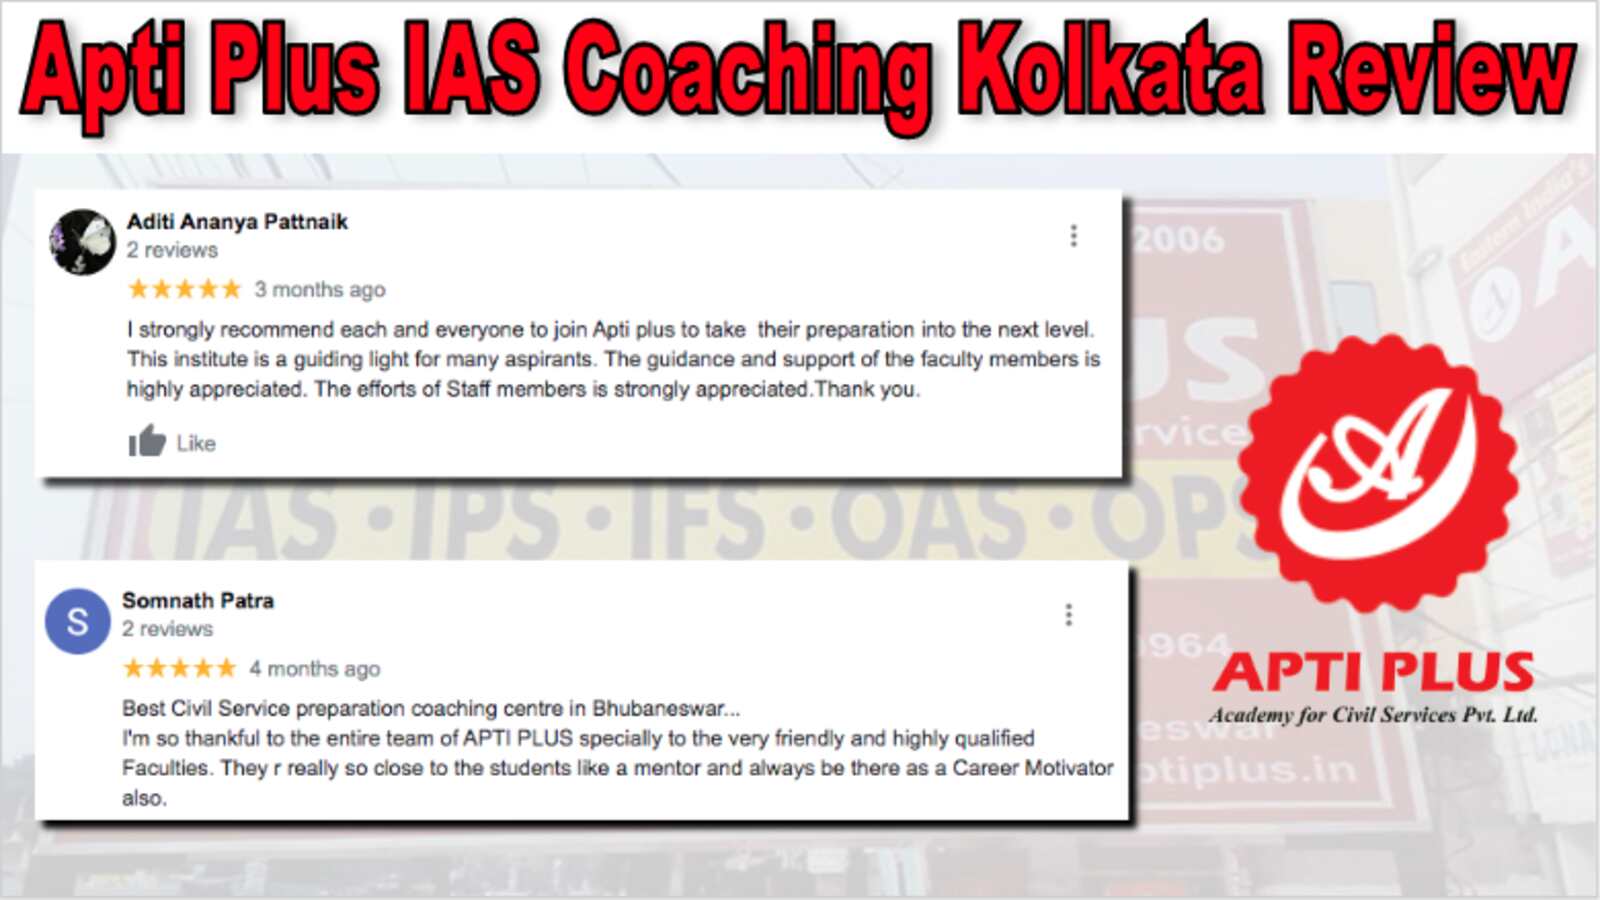 Apti Plus IAS Coaching Kolkata Review